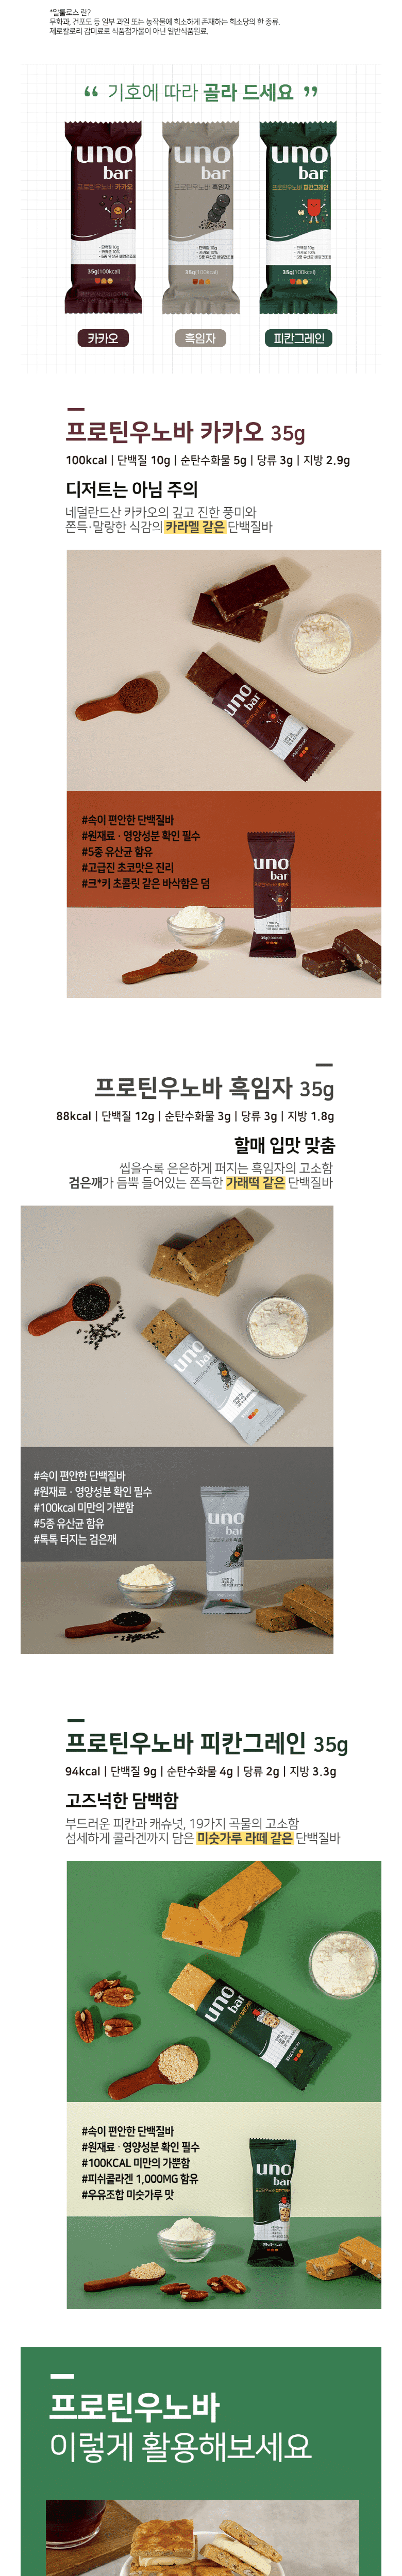 韓國食品-[프로틴 우노바] 흑임자 35g